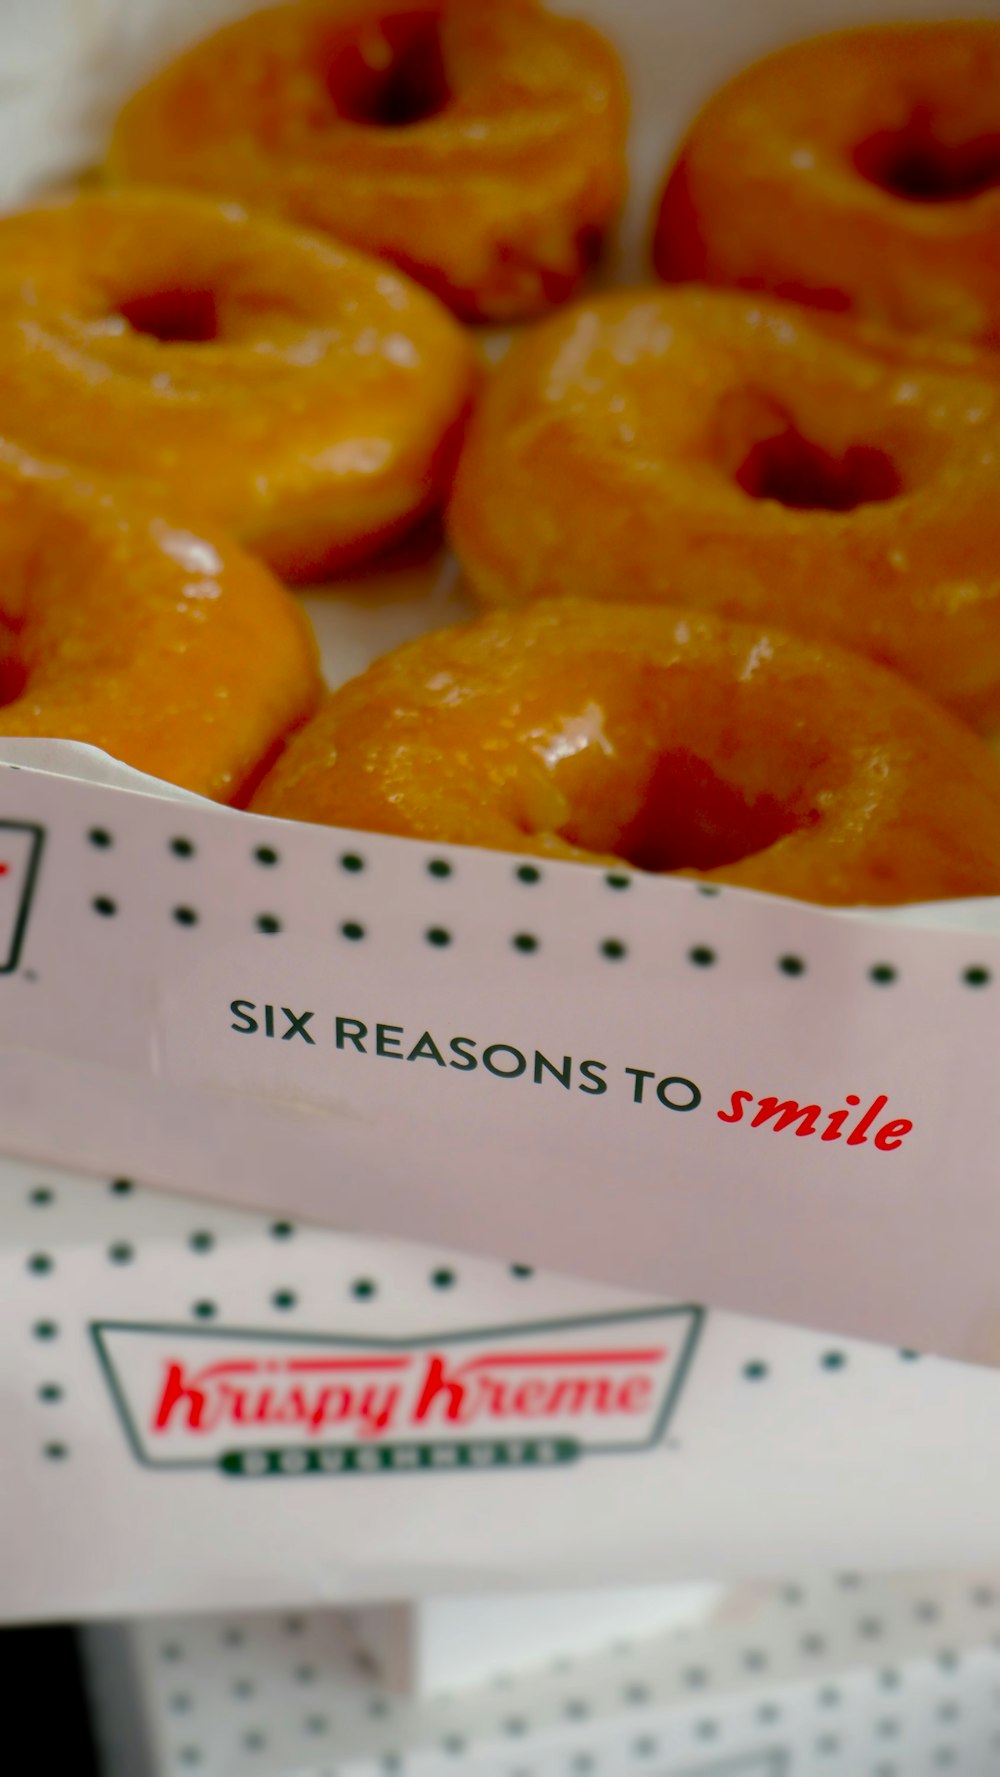 글레이즈드 도넛을 미소 지어야 하는 6가지 이유 상자